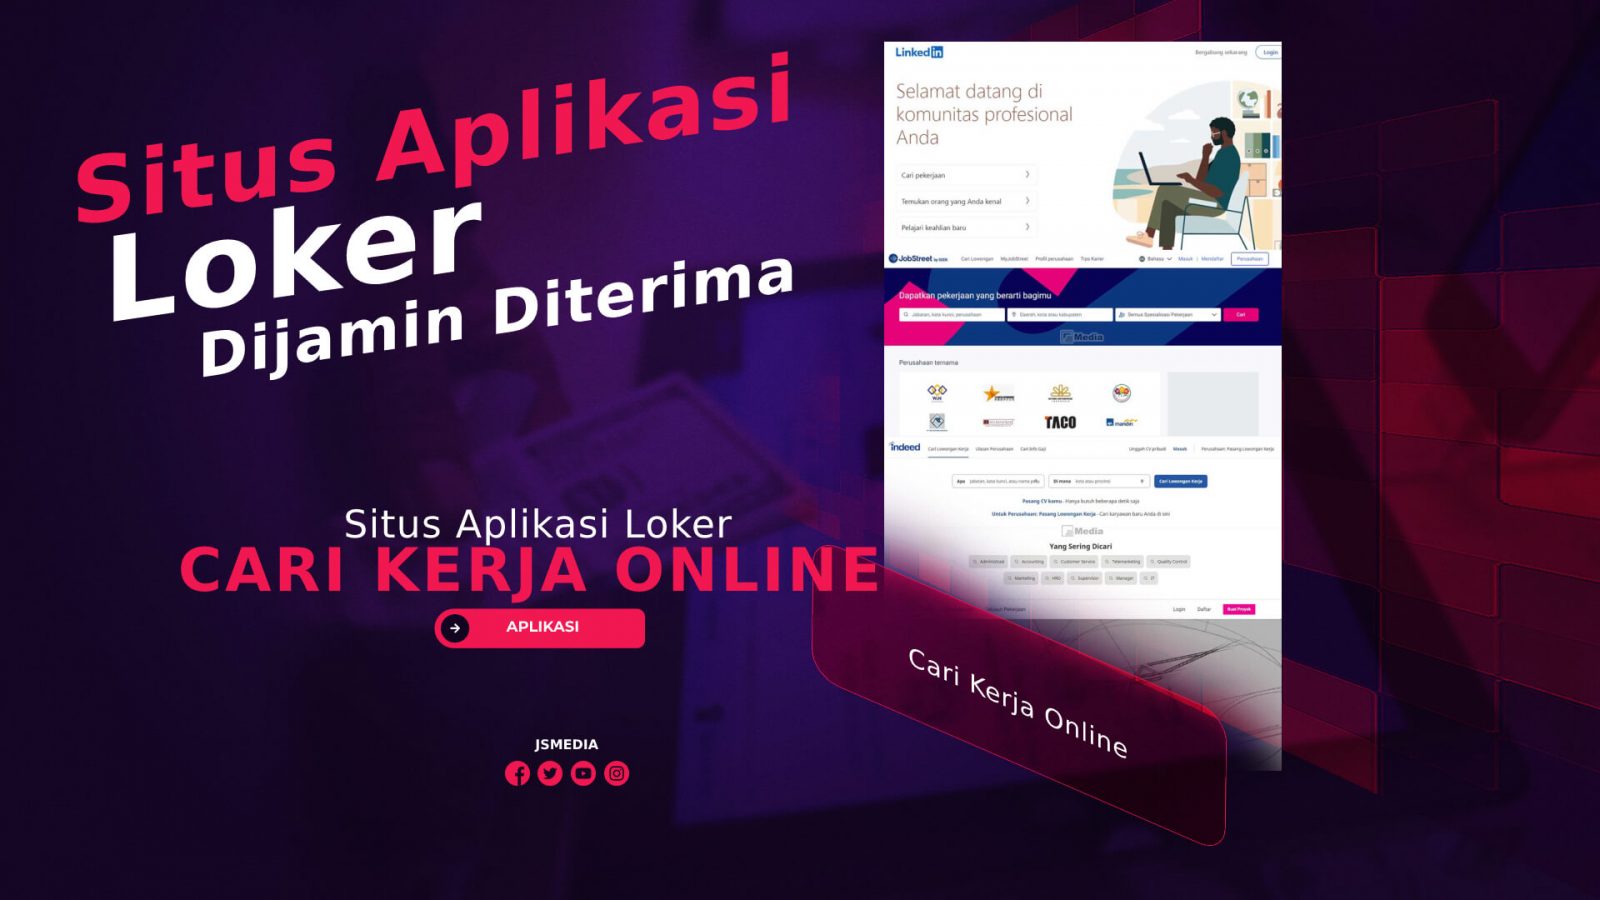 Situs Aplikasi Loker Cari Kerja Online, Terbaik di Indonesia